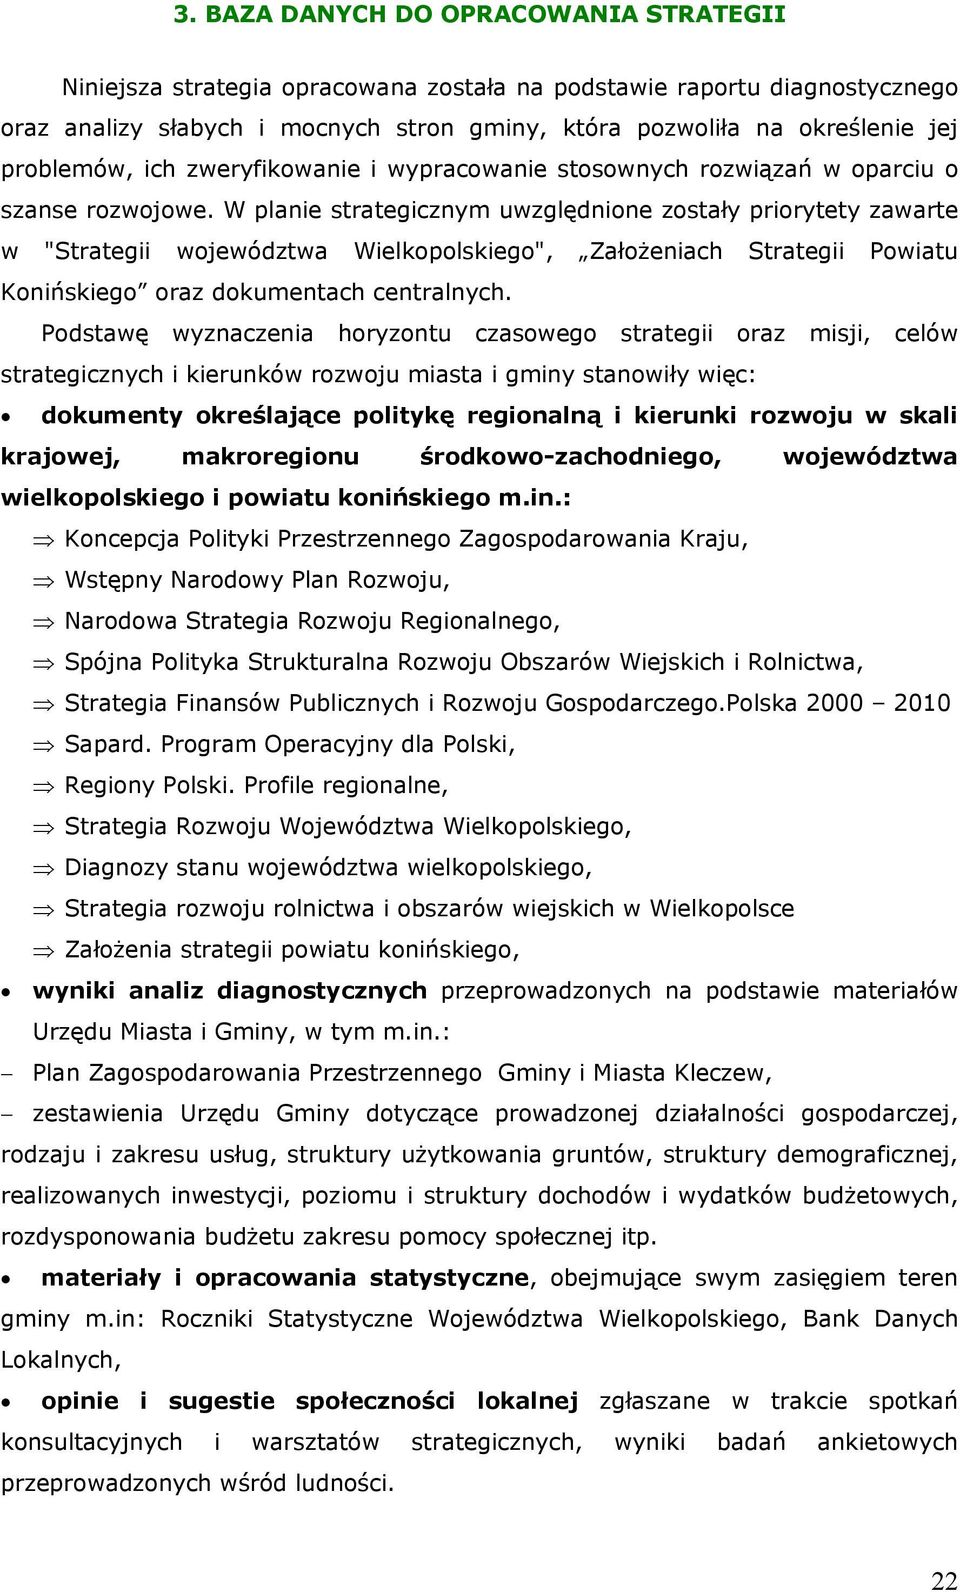 W planie strategicznym uwzględnione zostały priorytety zawarte w "Strategii województwa Wielkopolskiego", Założeniach Strategii Powiatu Konińskiego oraz dokumentach centralnych.